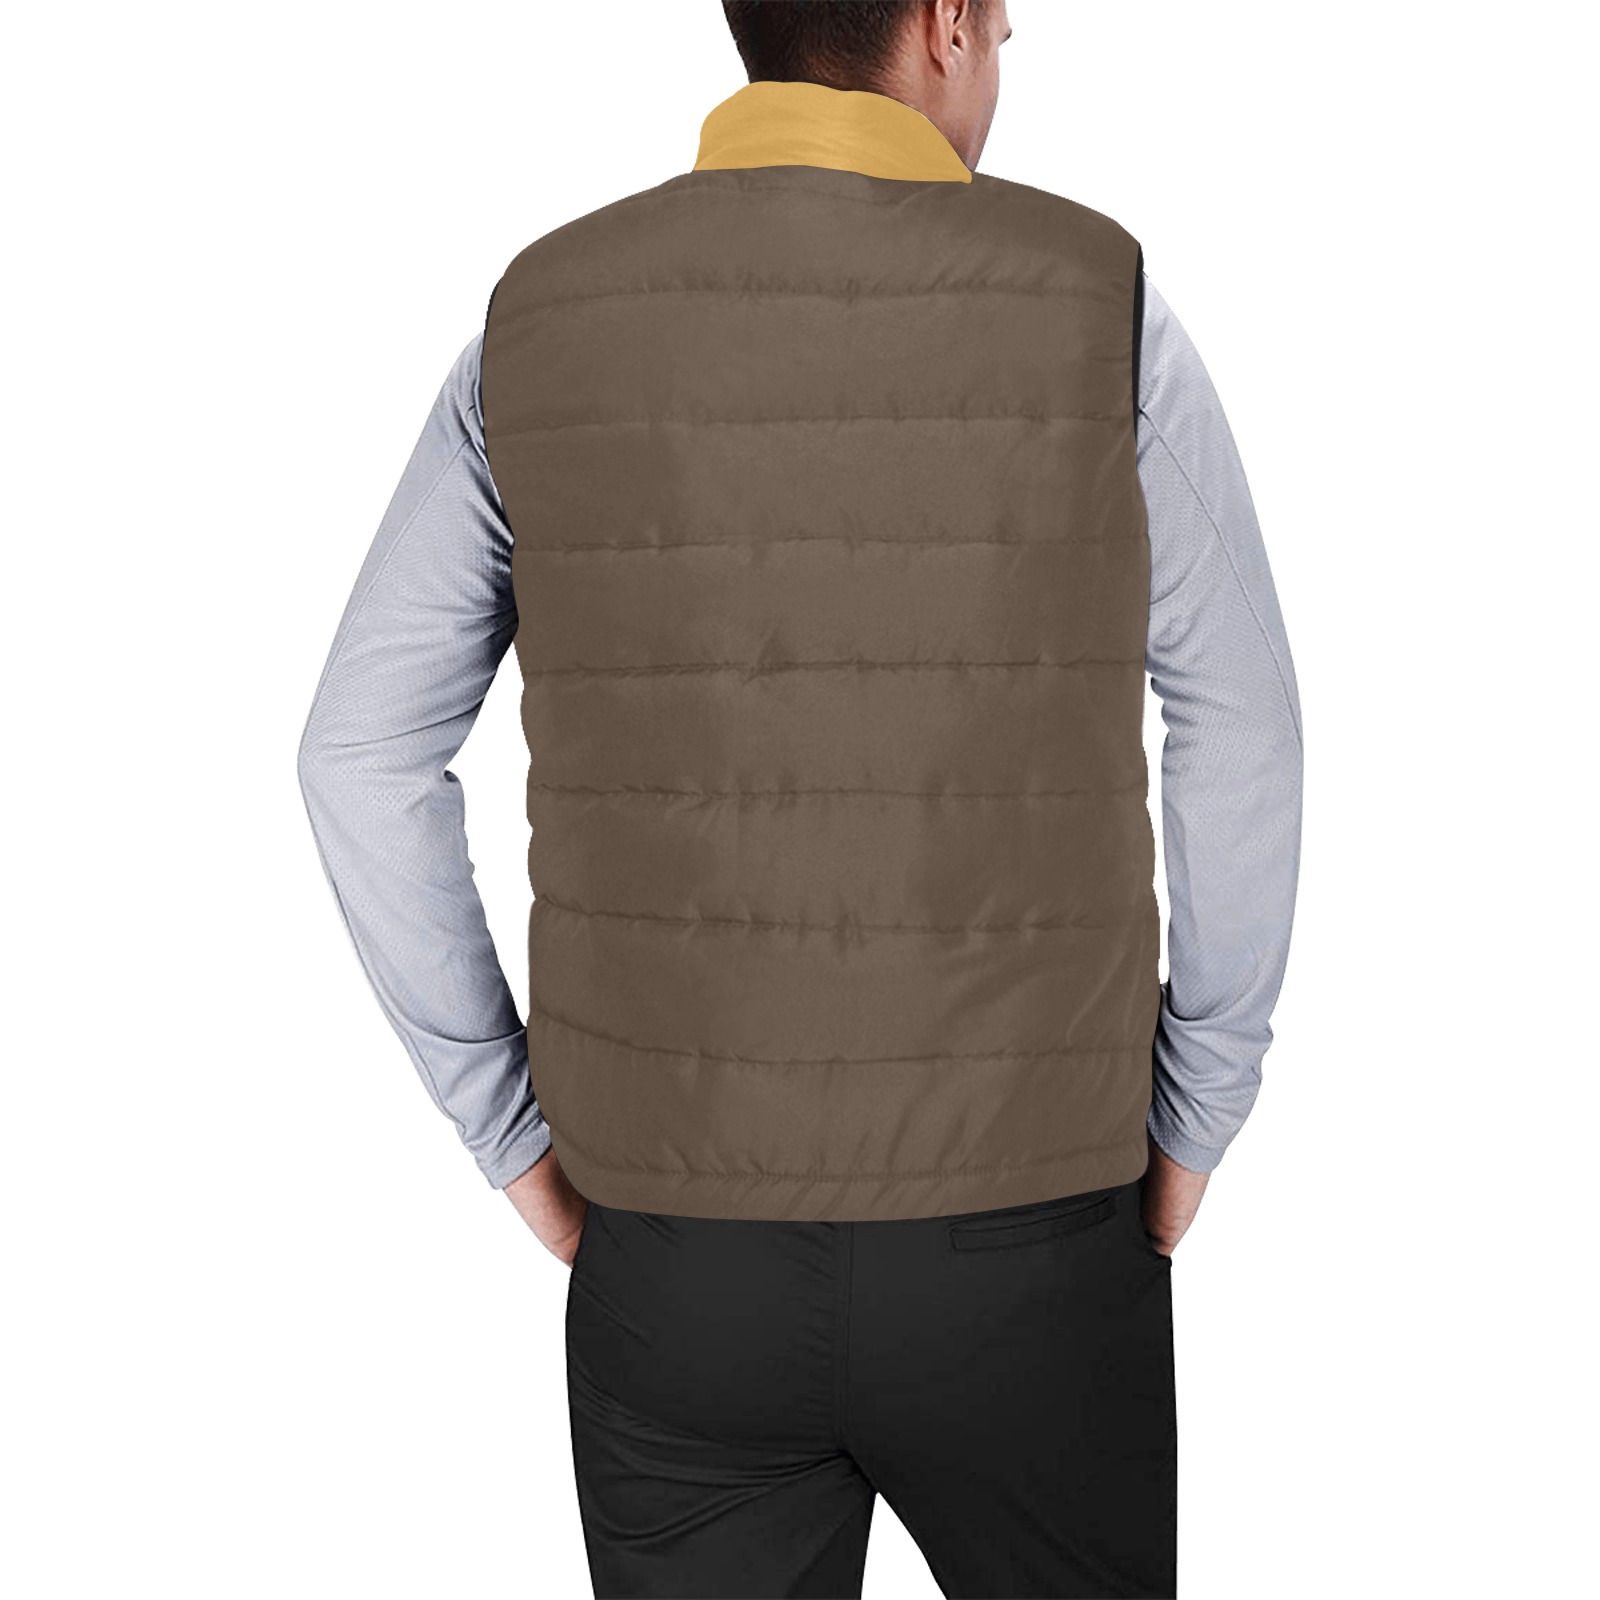 MEN'S VIP VEST Men's Padded Vest Jacket (Model H44)